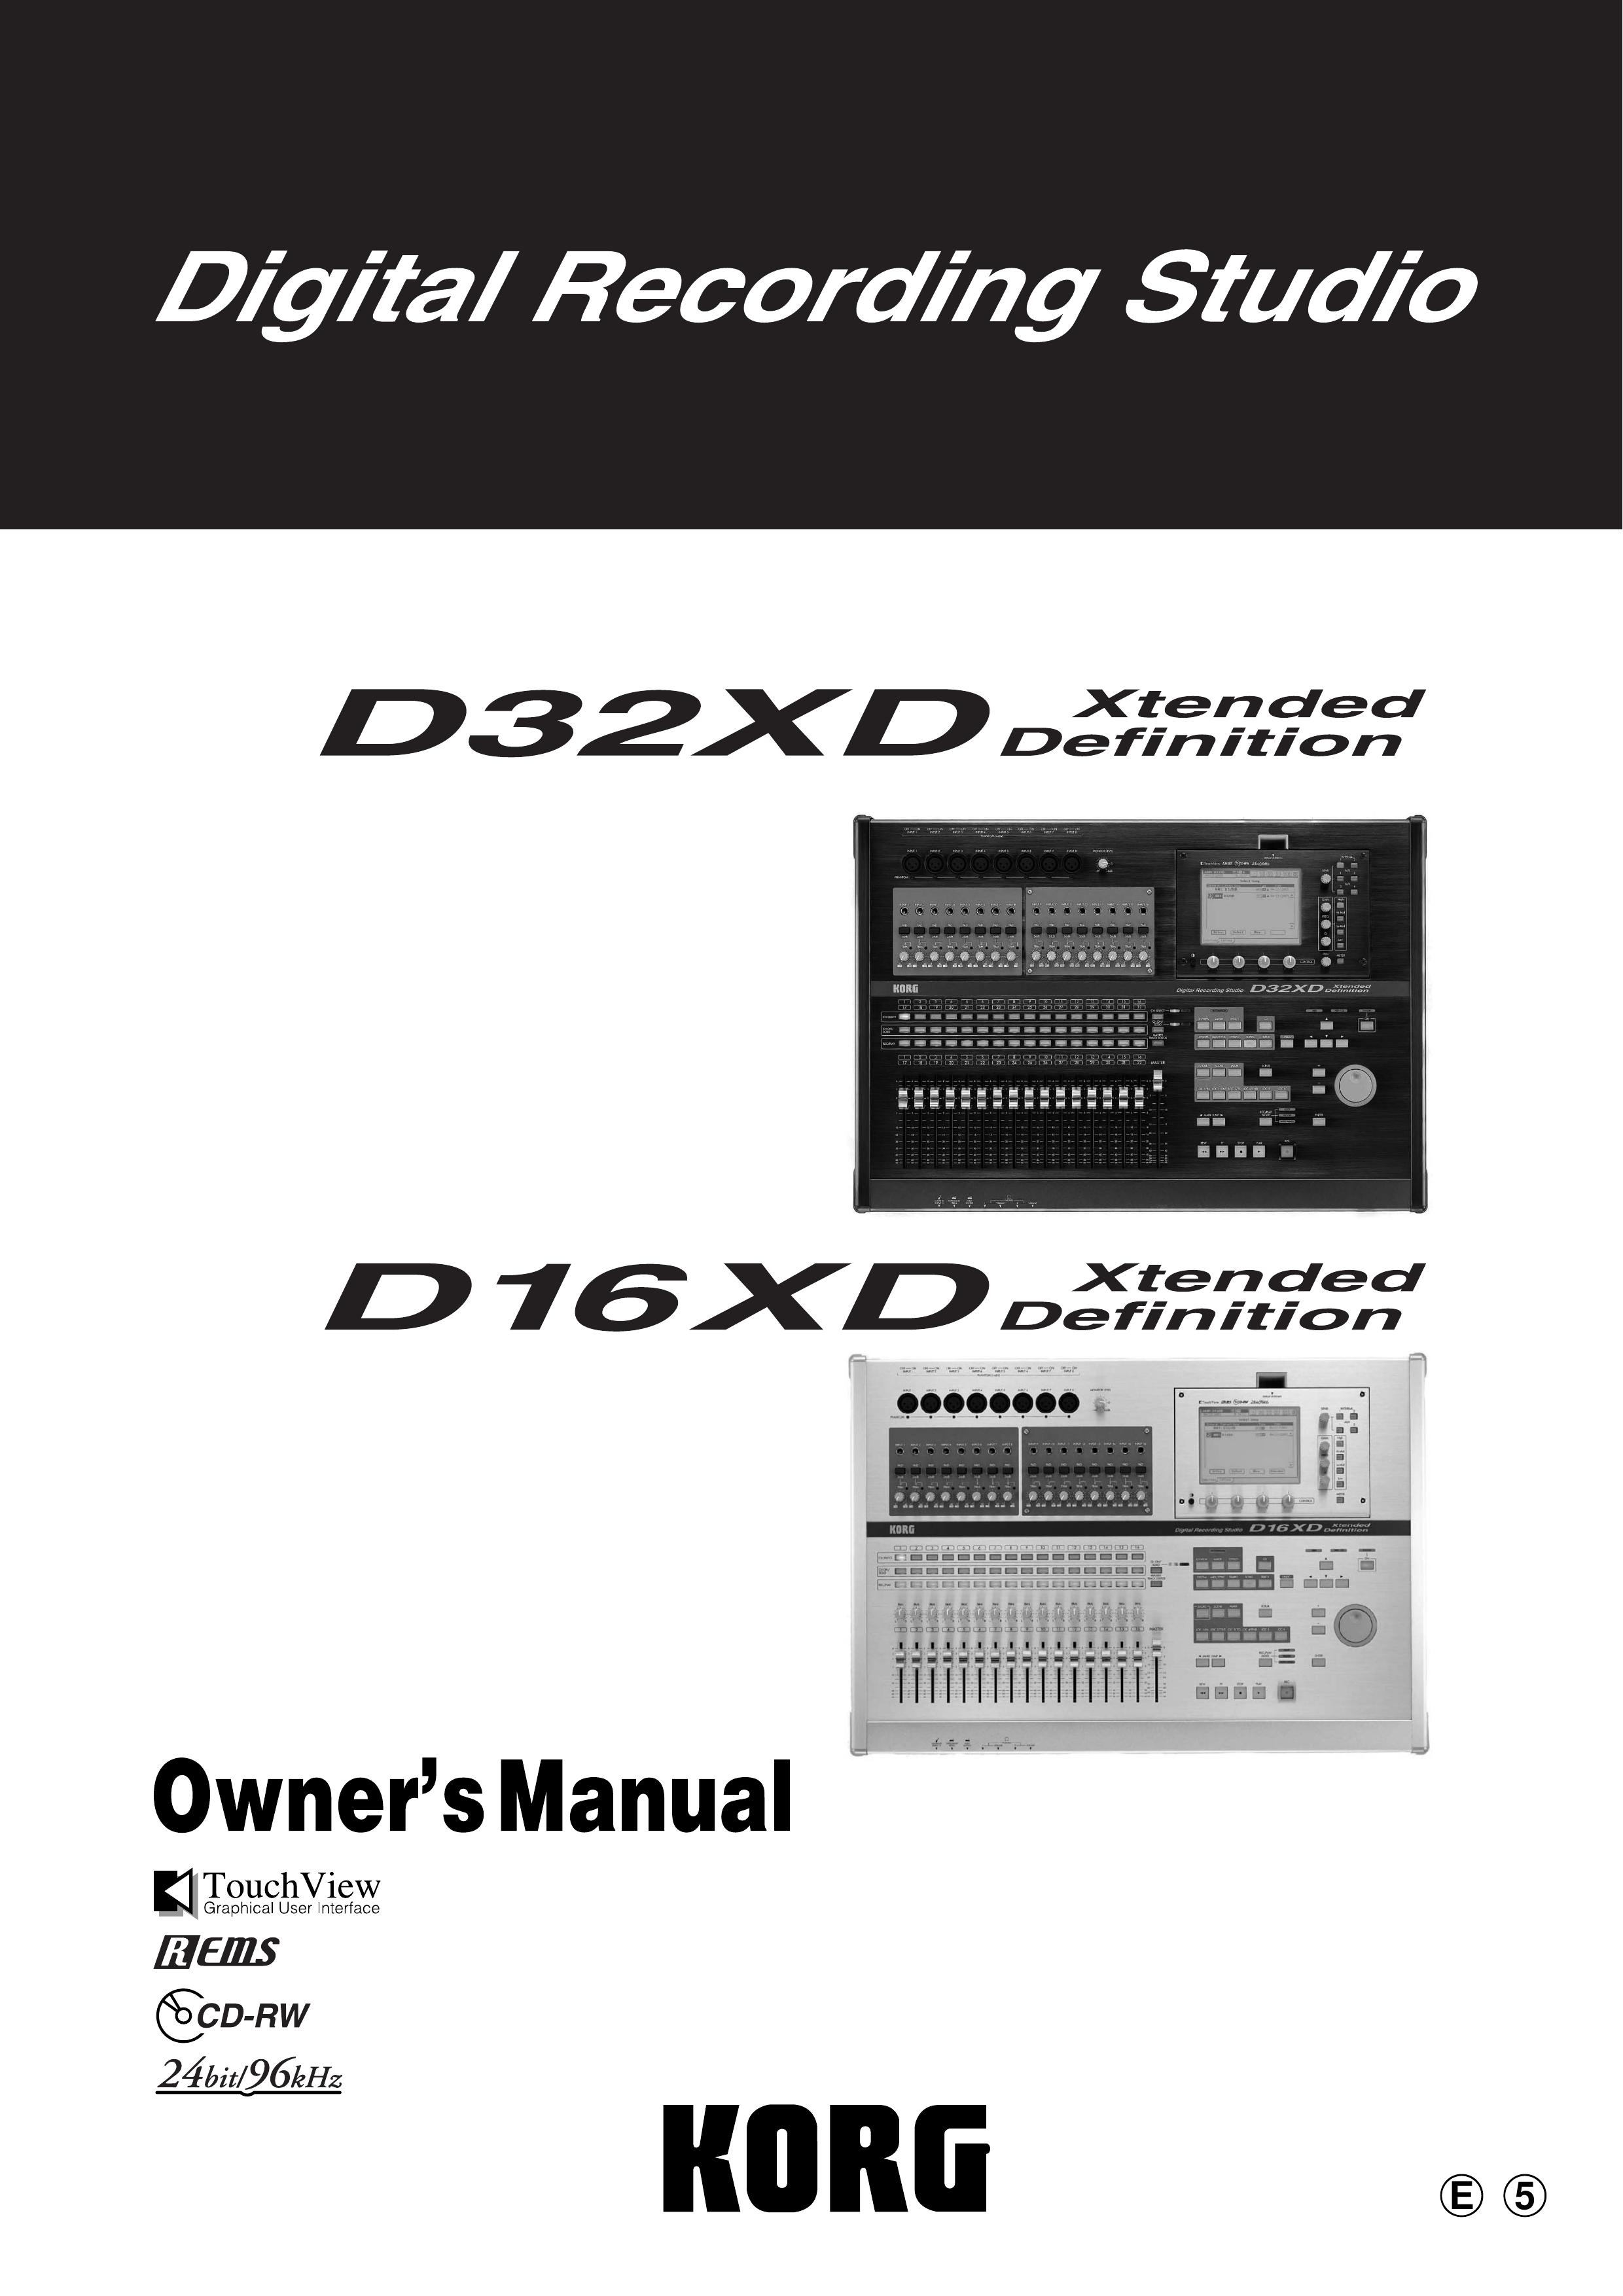 Korg D32XD Recording Equipment User Manual